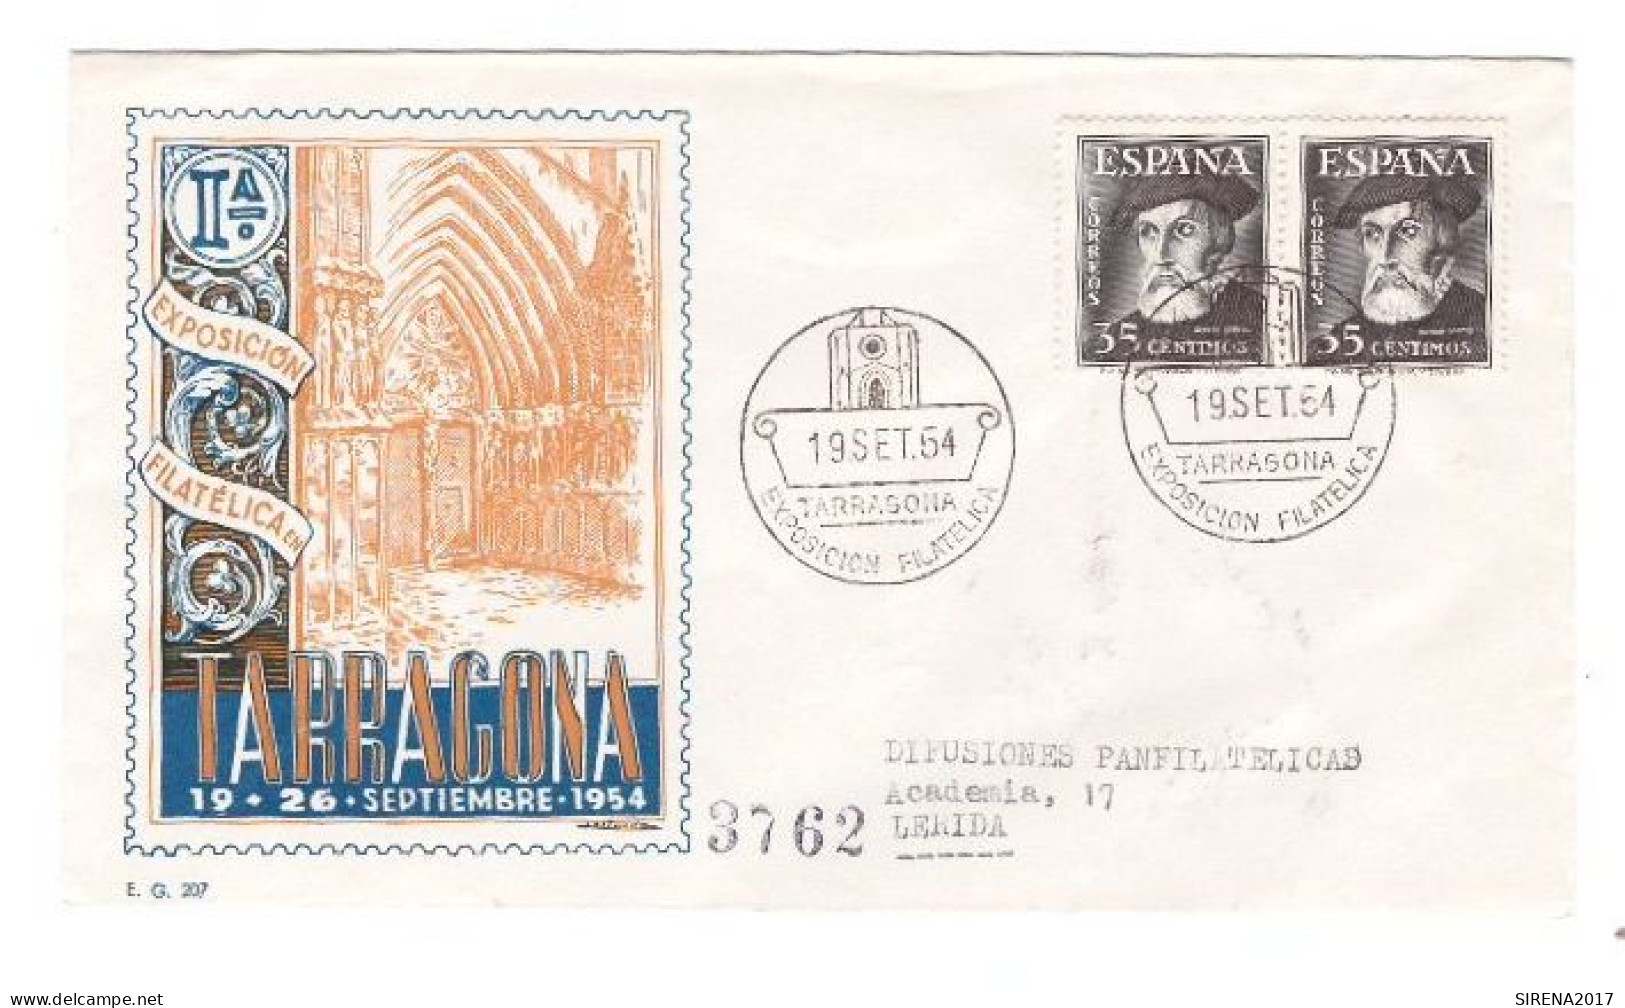 EXPOSICION FILATELICA DE TARRAGONA 1954 - SOBRE CON SELLOS Y SELLOS DE EVENTOS - Máquinas Franqueo (EMA)